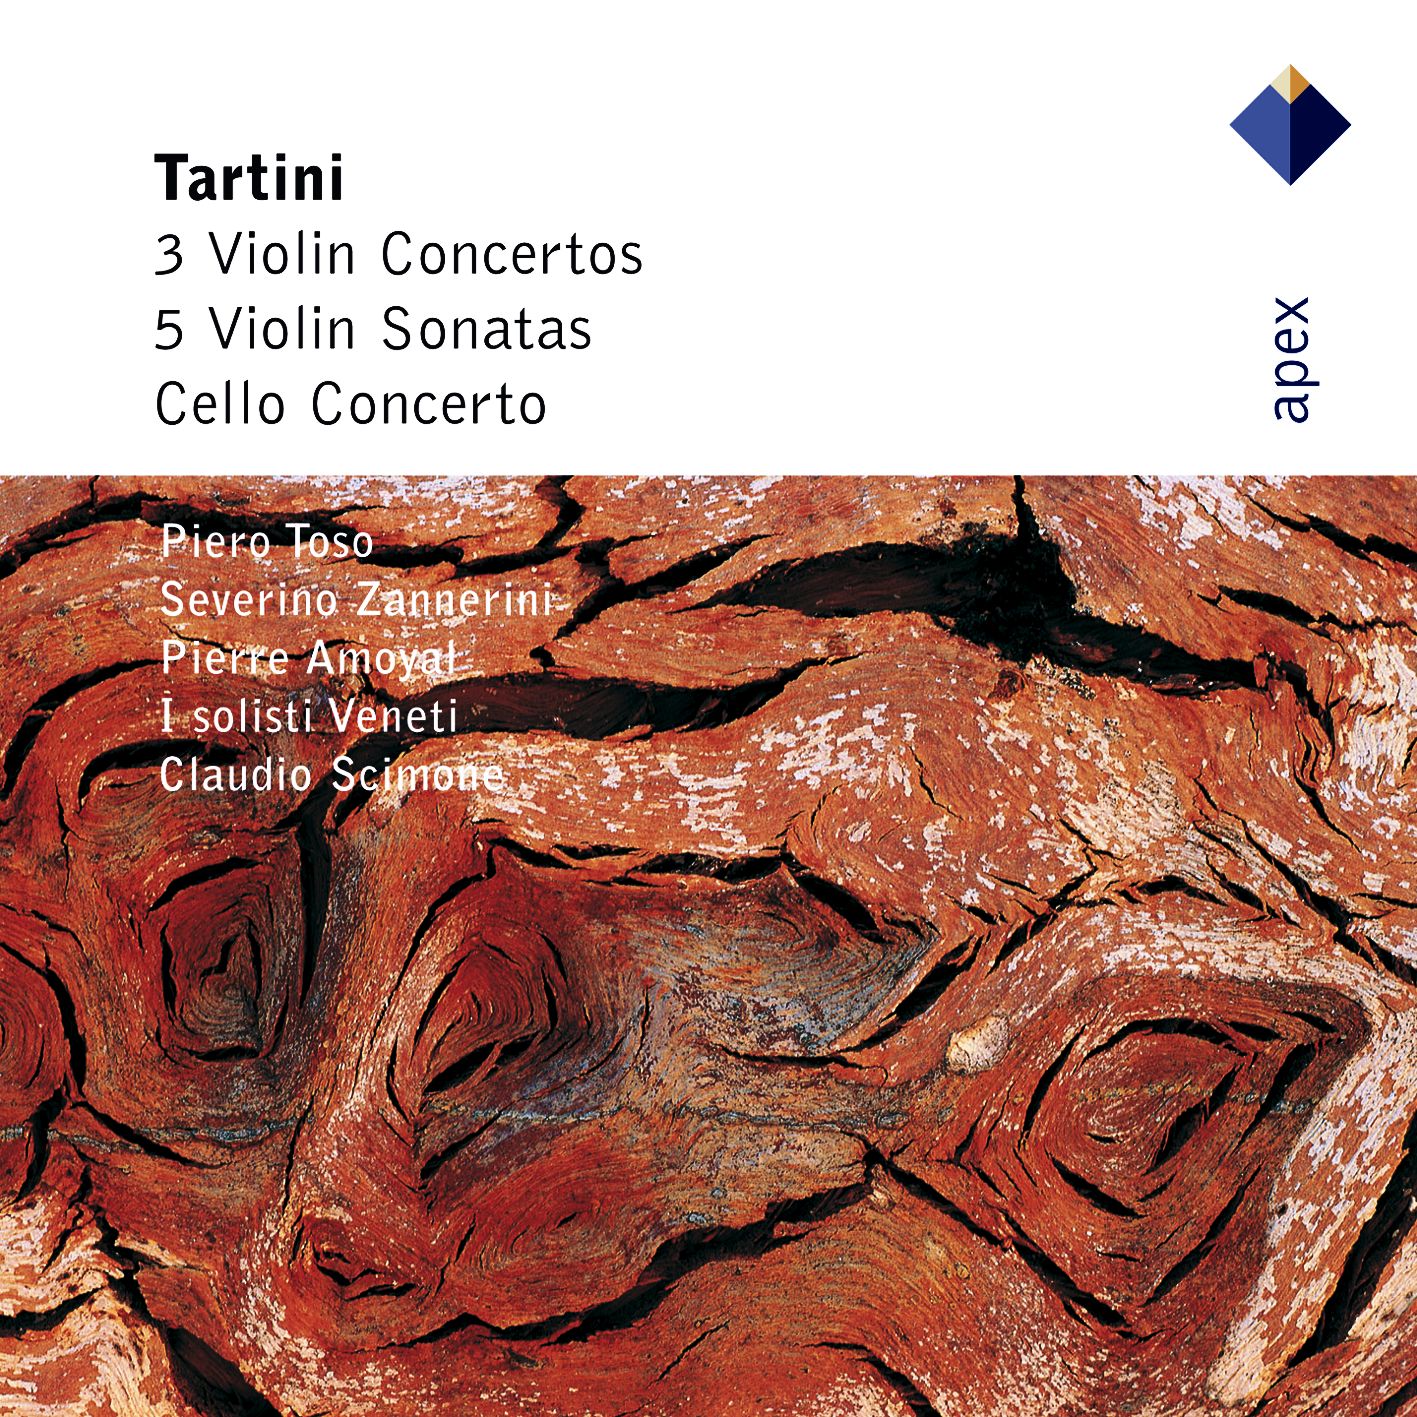 Tartini : Violin Concerto in E minor D56 : III Allegro